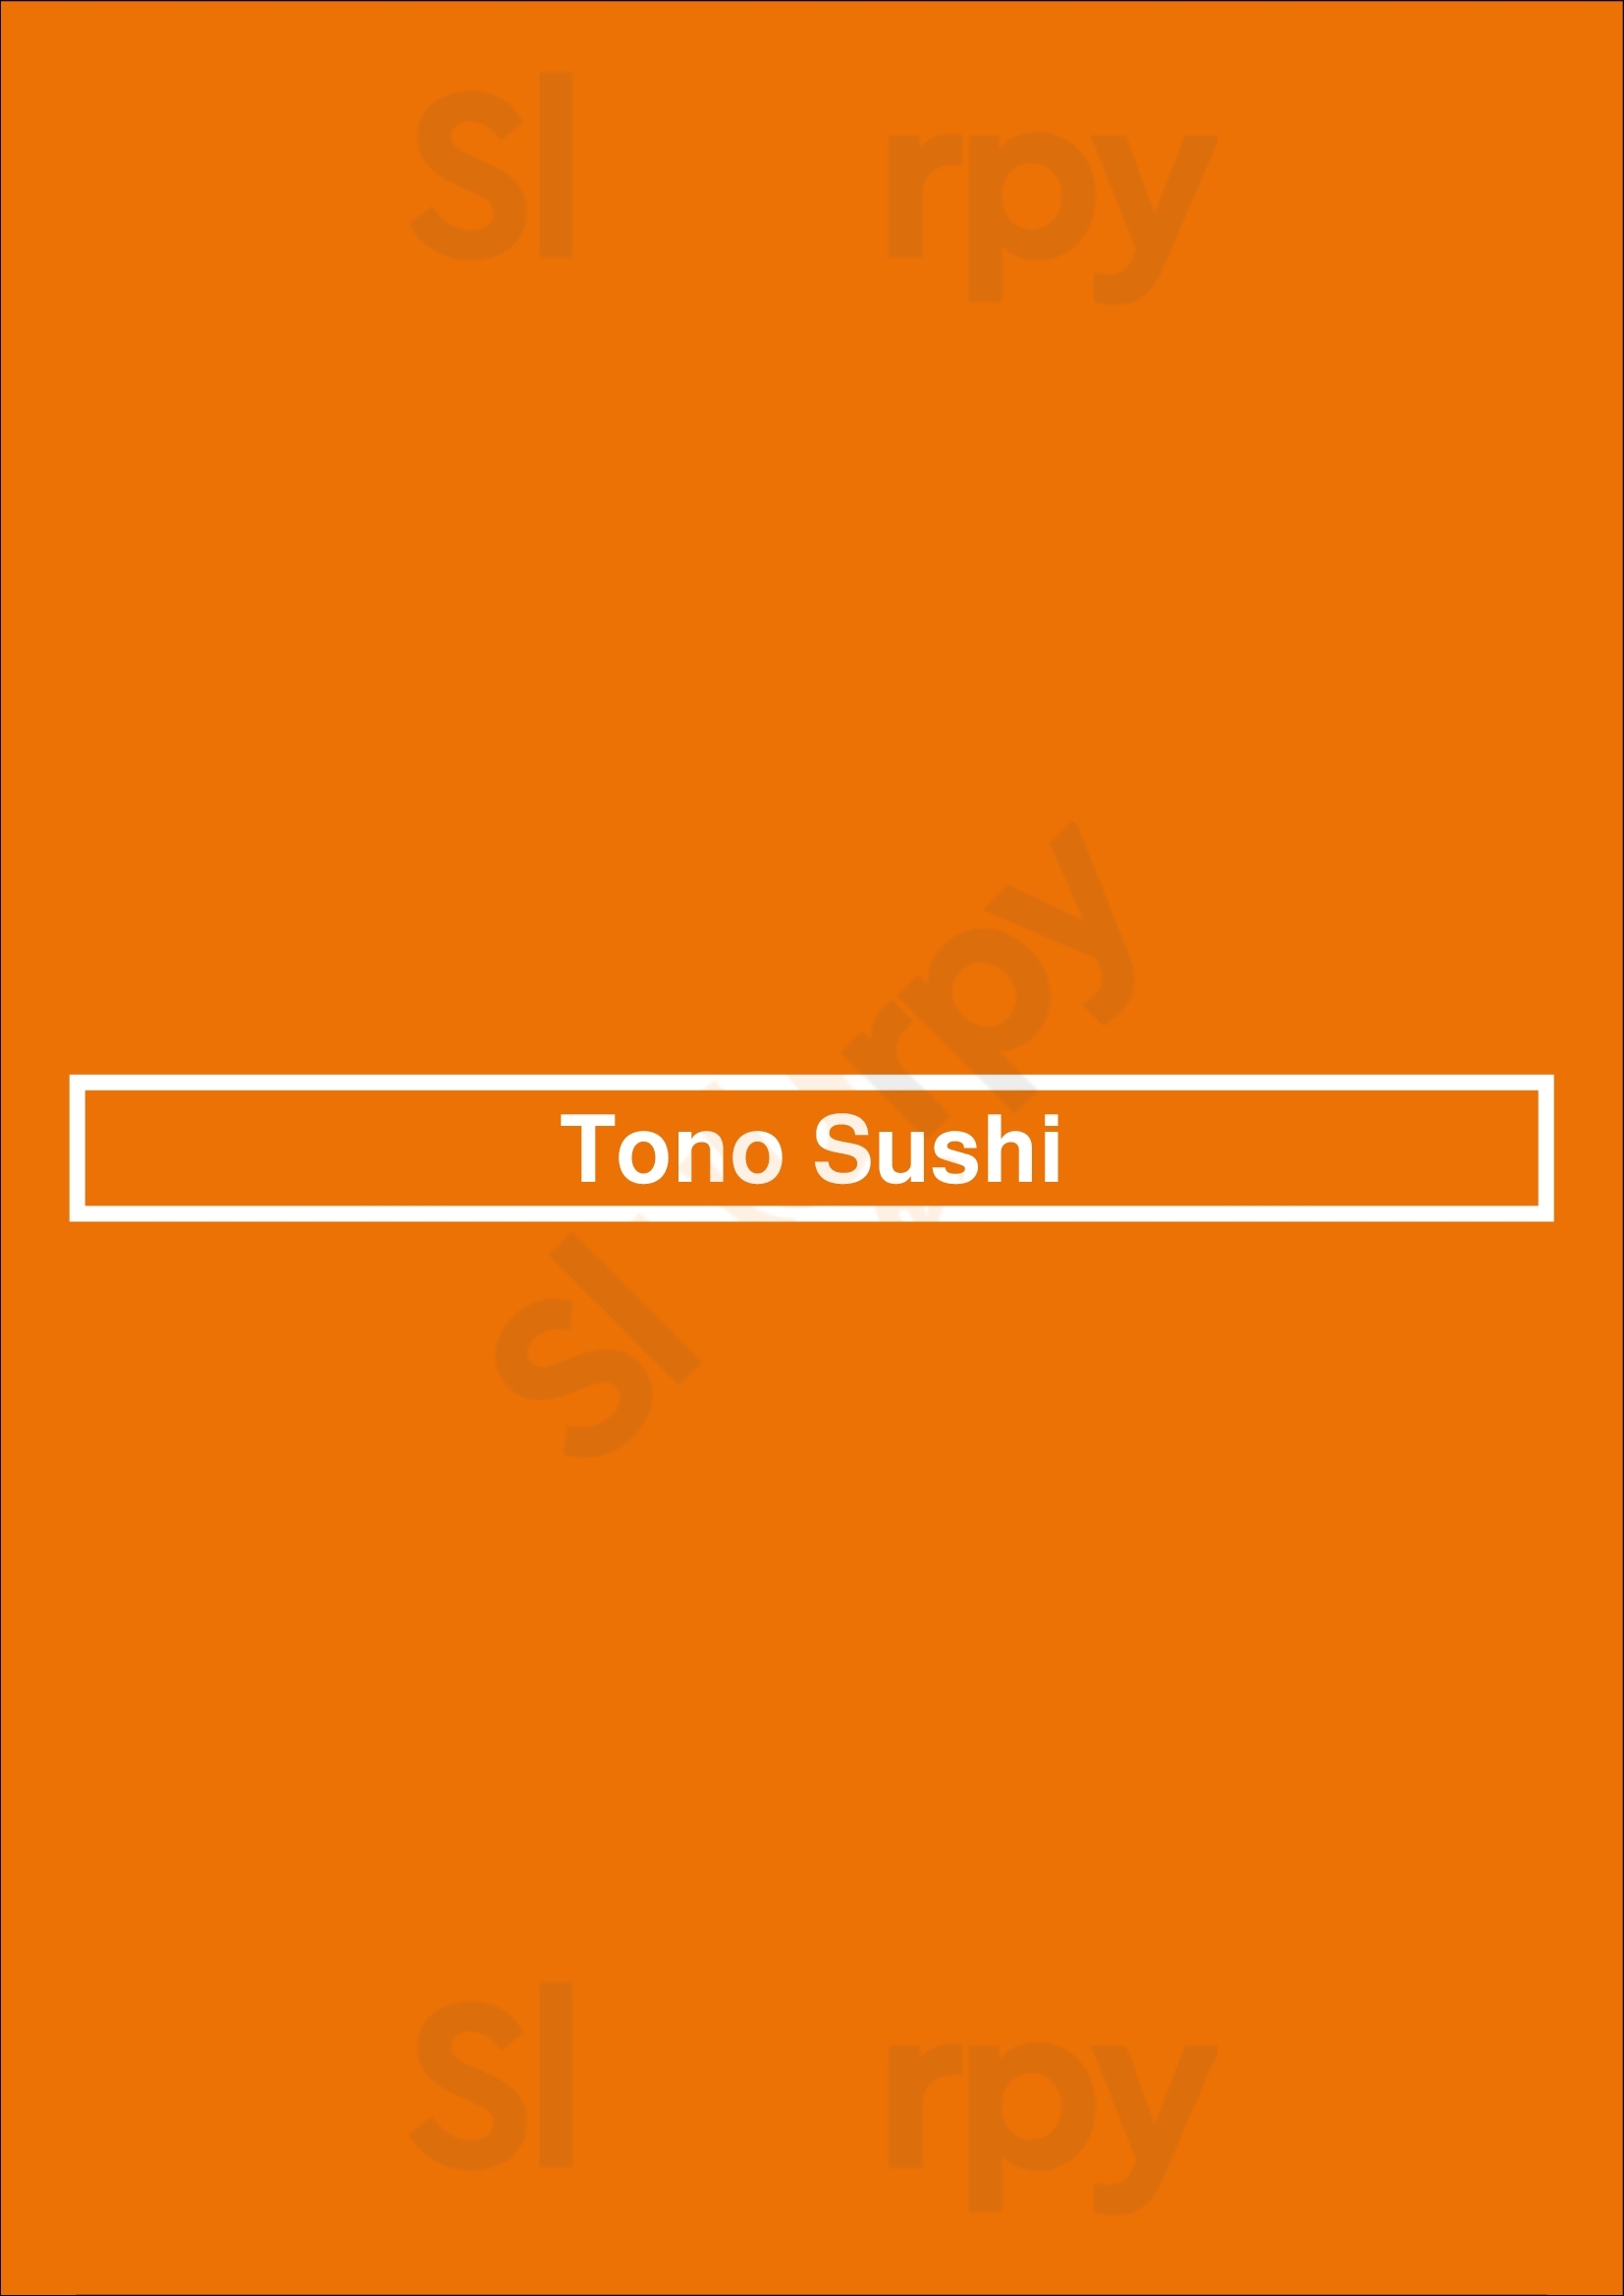 Tono Sushi Washington DC Menu - 1